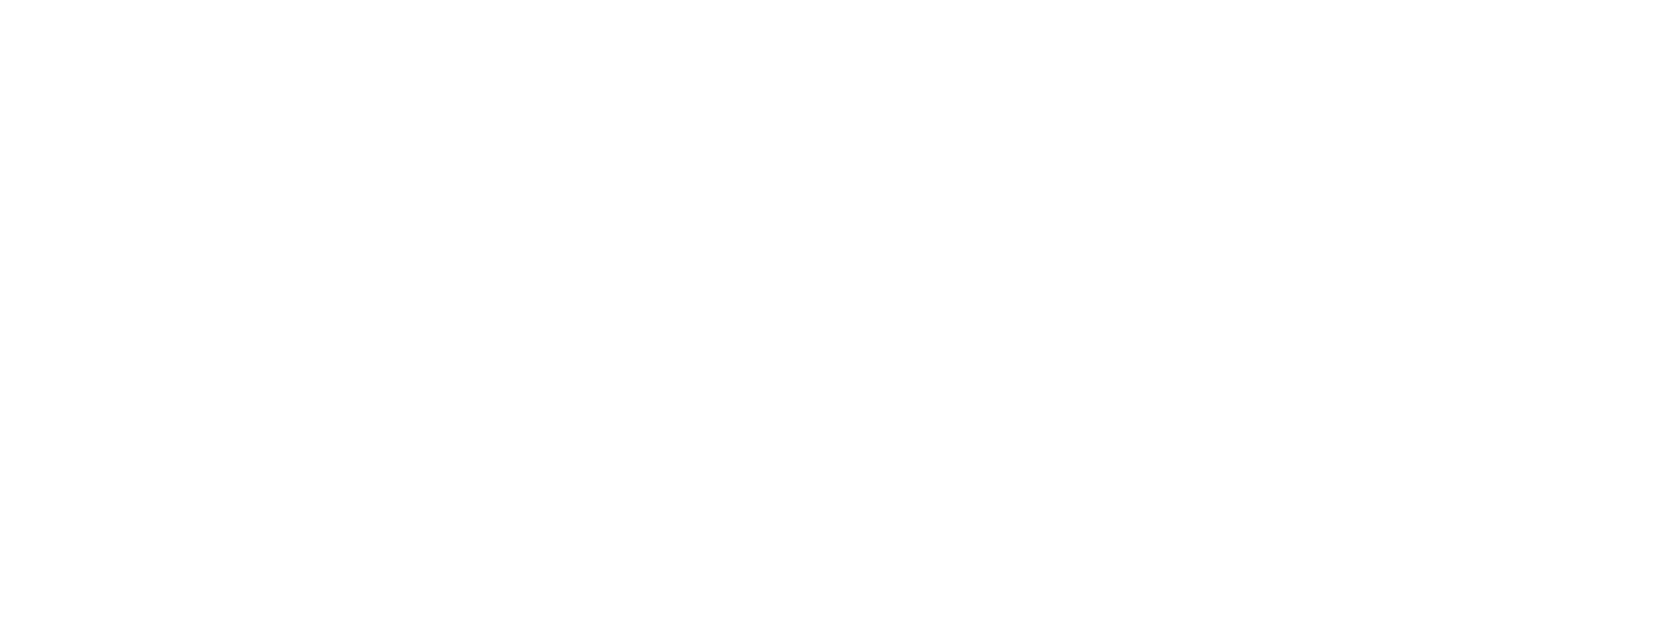 BEVVO Blender logo